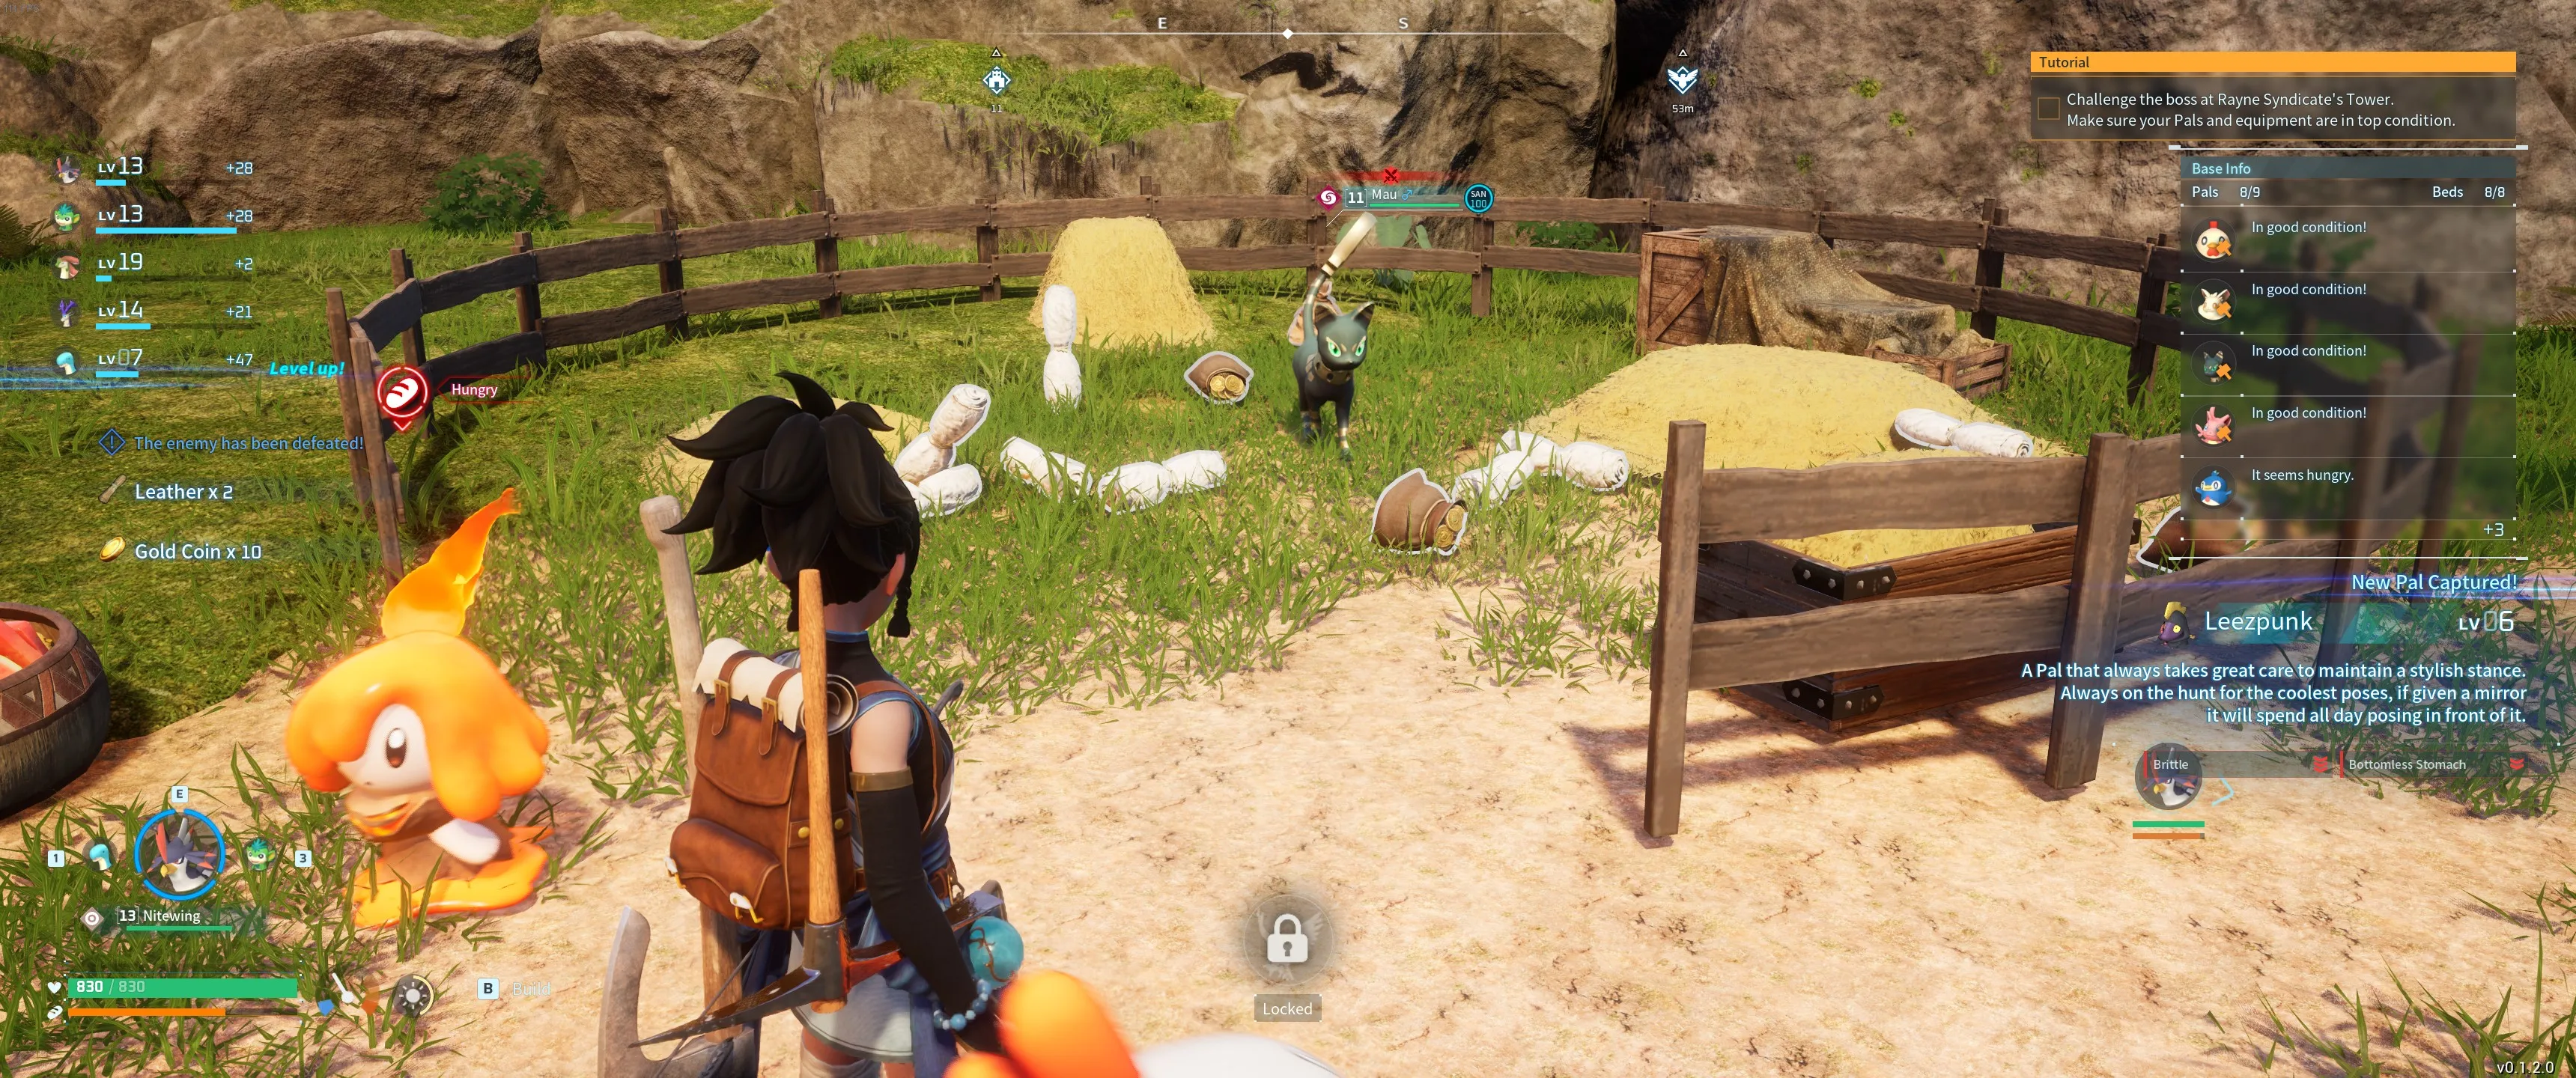 Palworld: Una imagen del personaje del jugador frente a la granja donde un Mau está cultivando oro